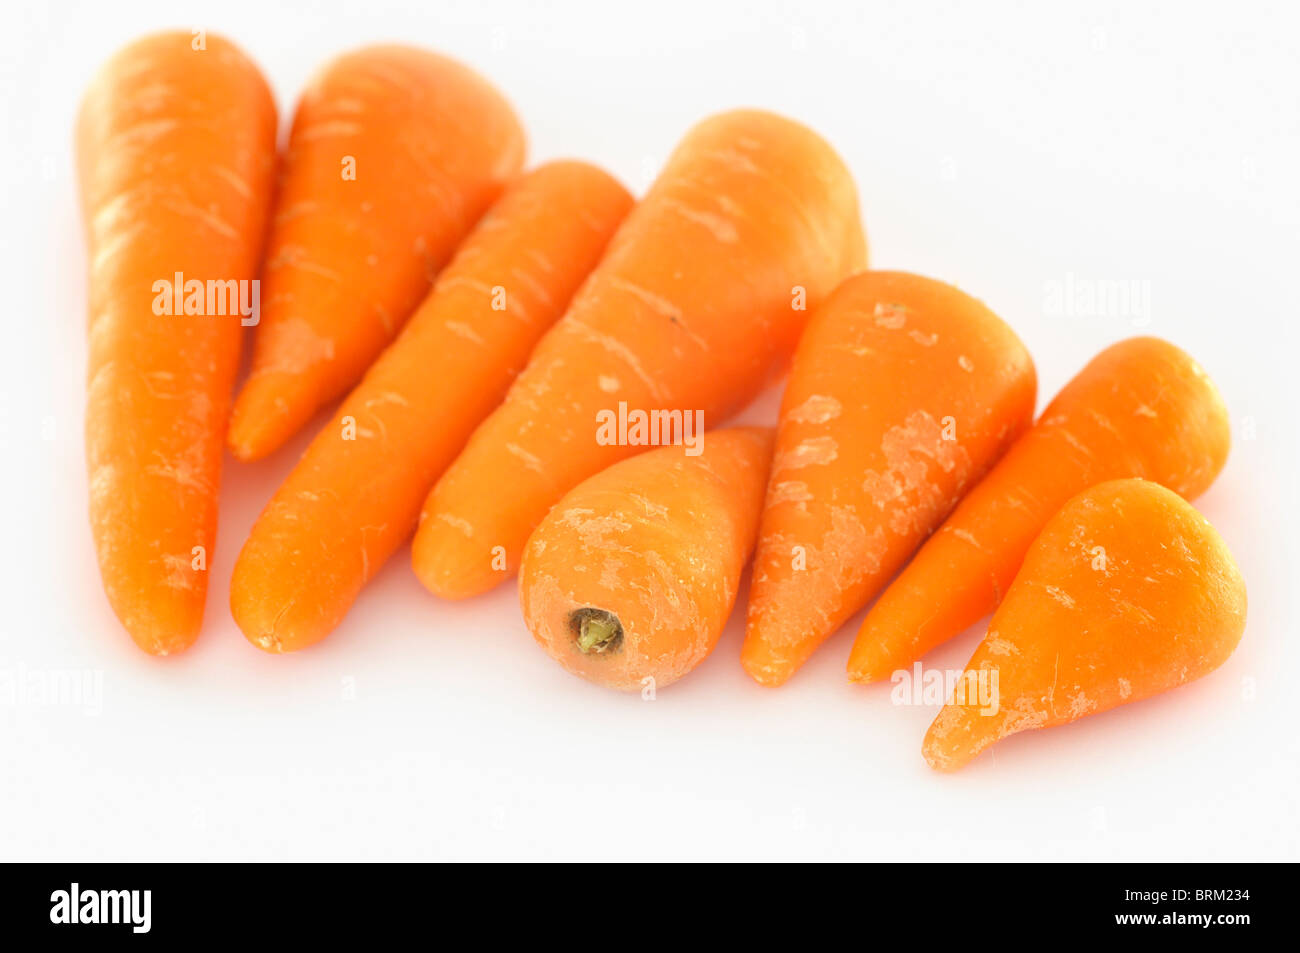 Chantenay carrots Stock Photo